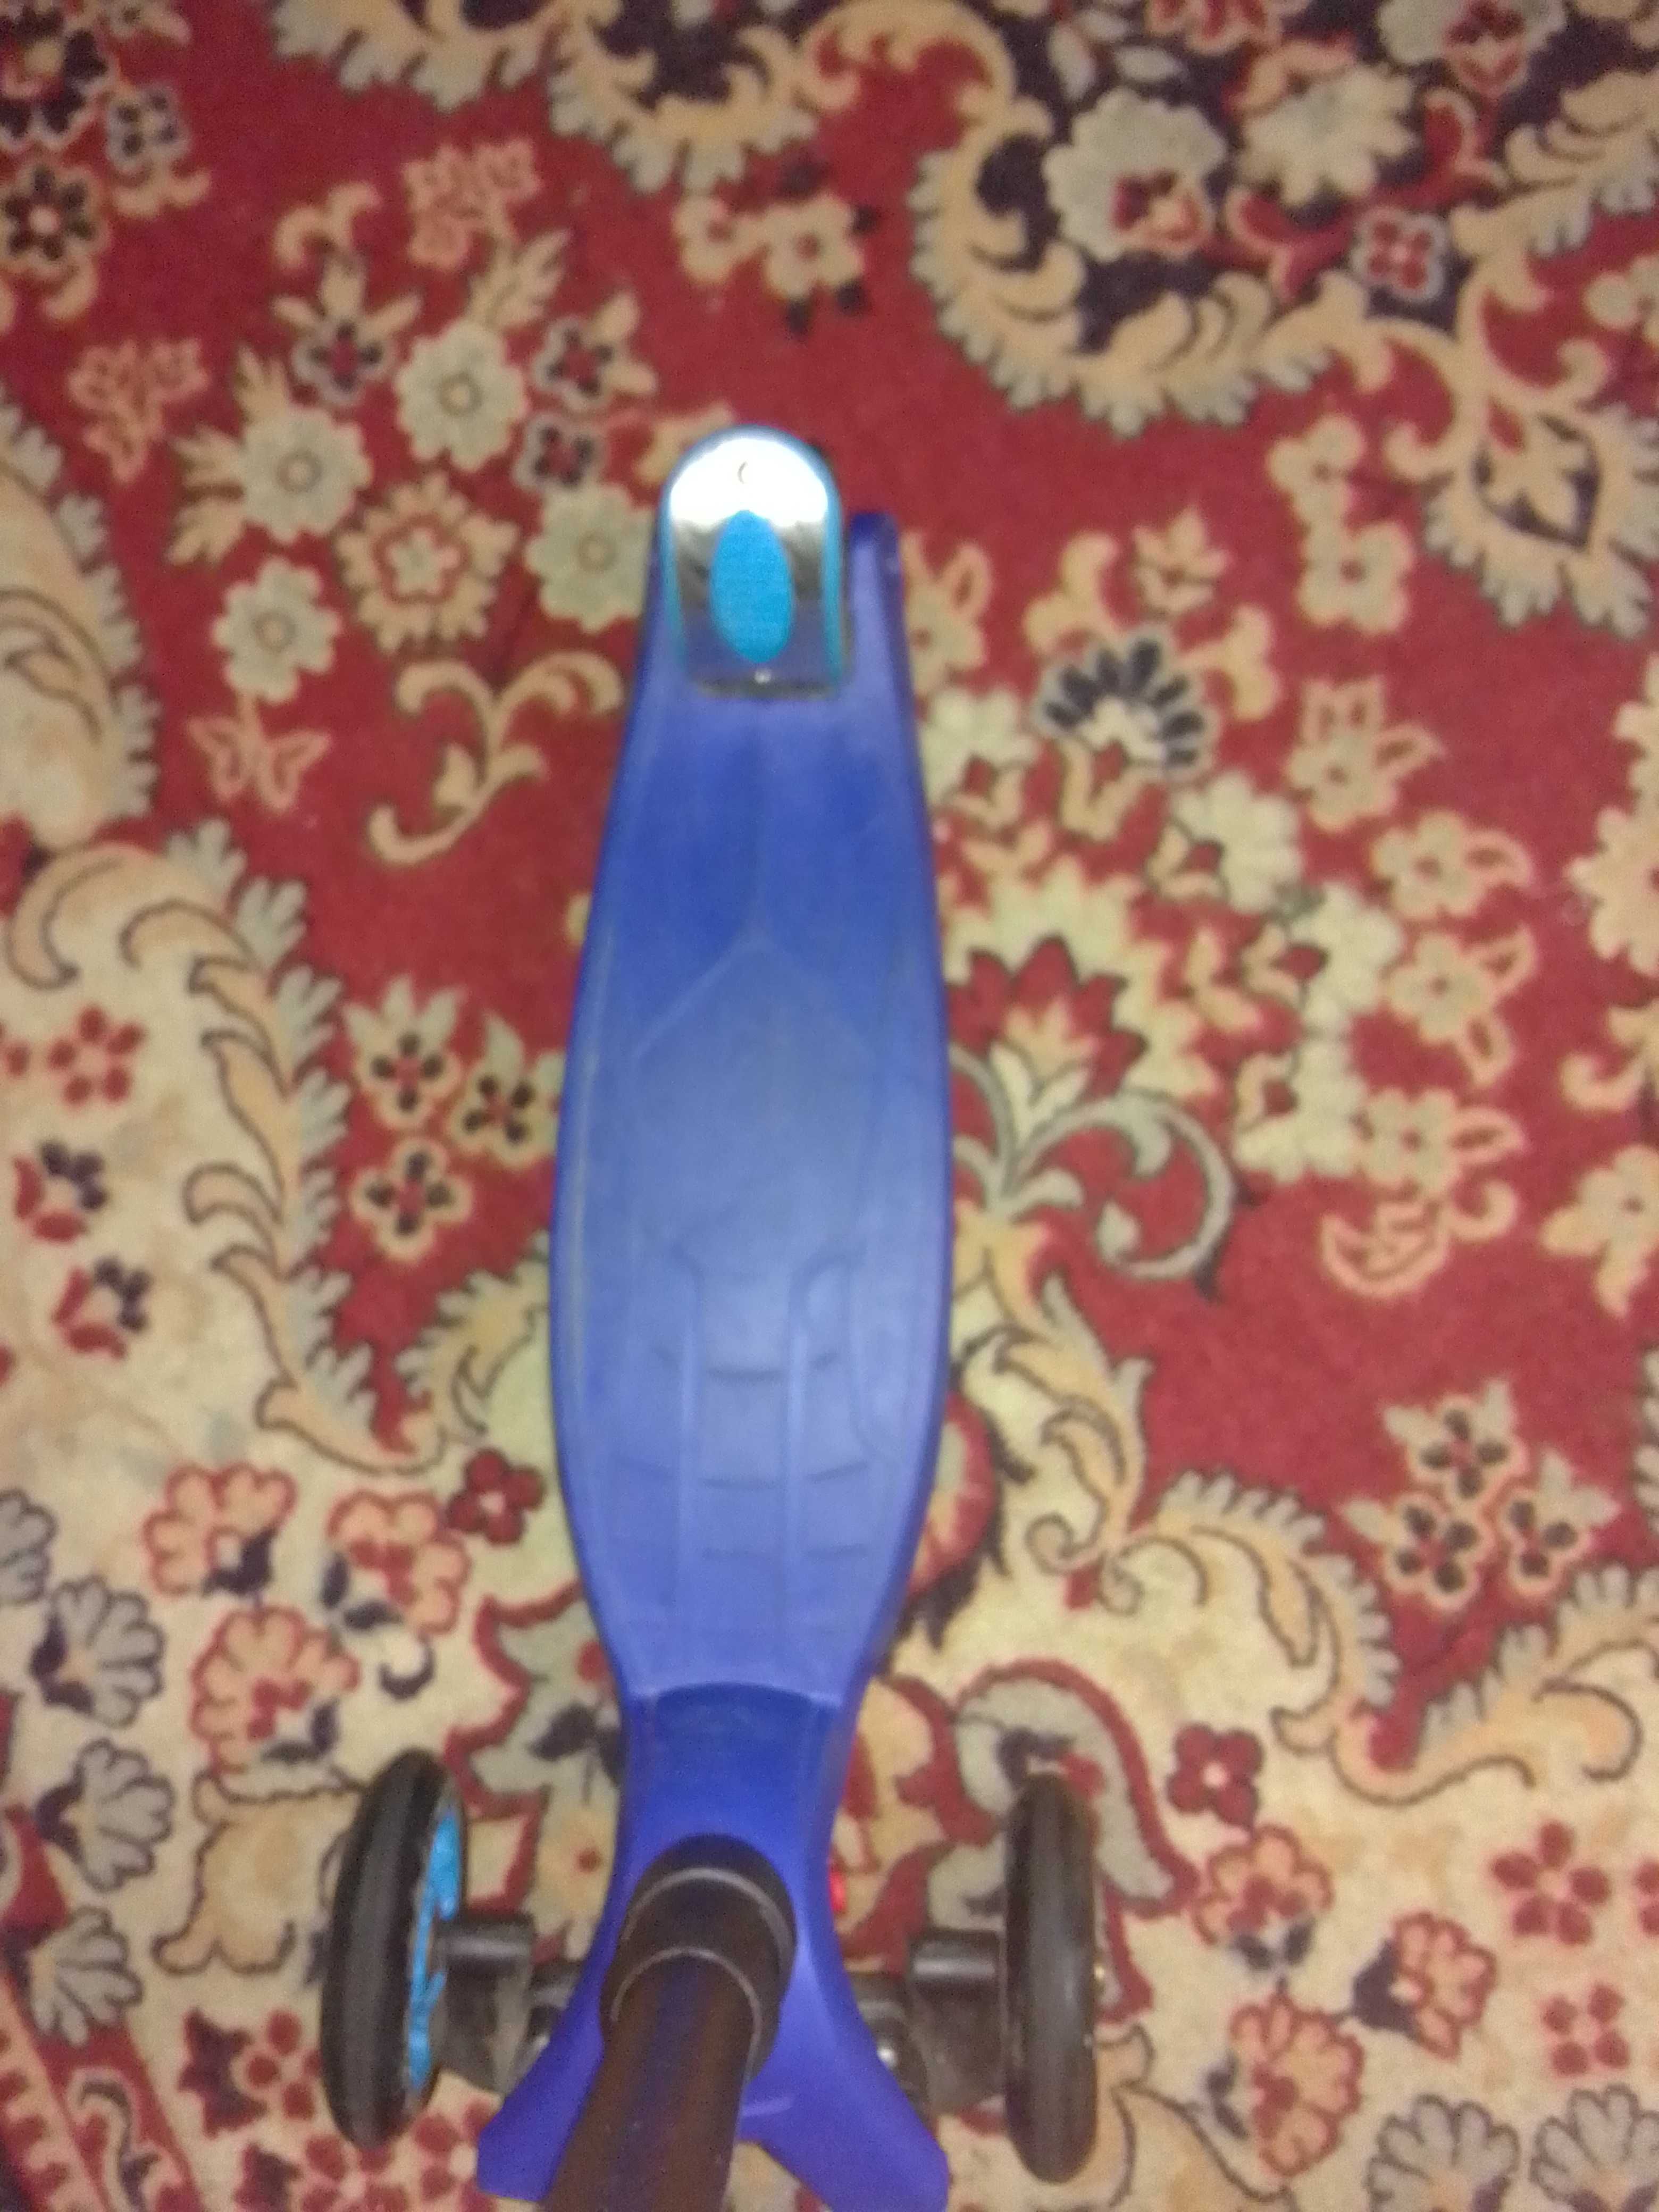 Cамокат детский best scooter от3 до 7 лет